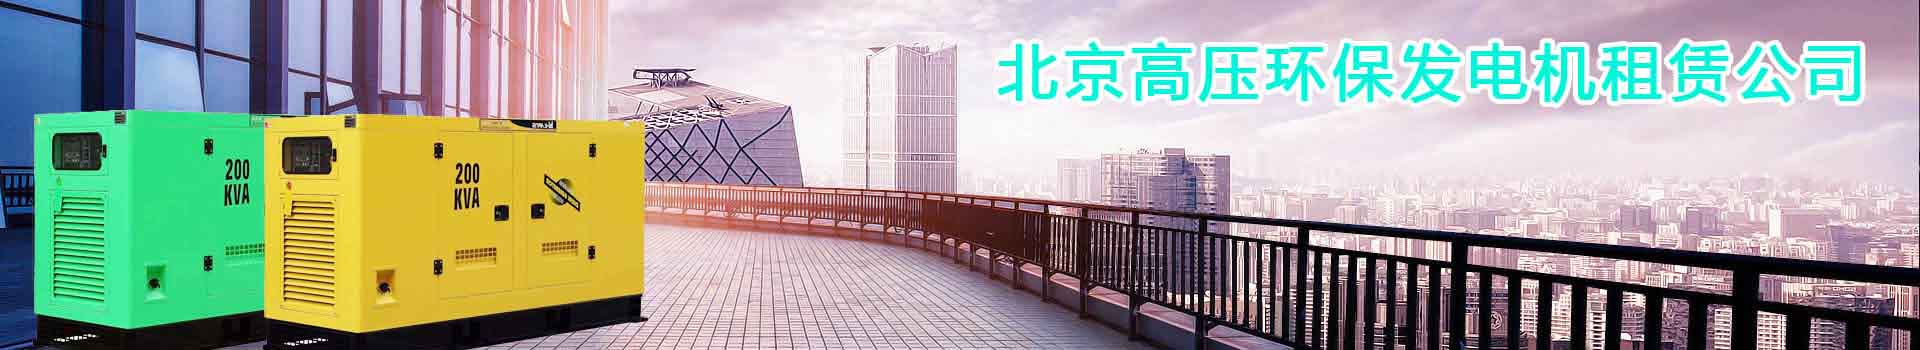 北京门头沟109高速公路建设